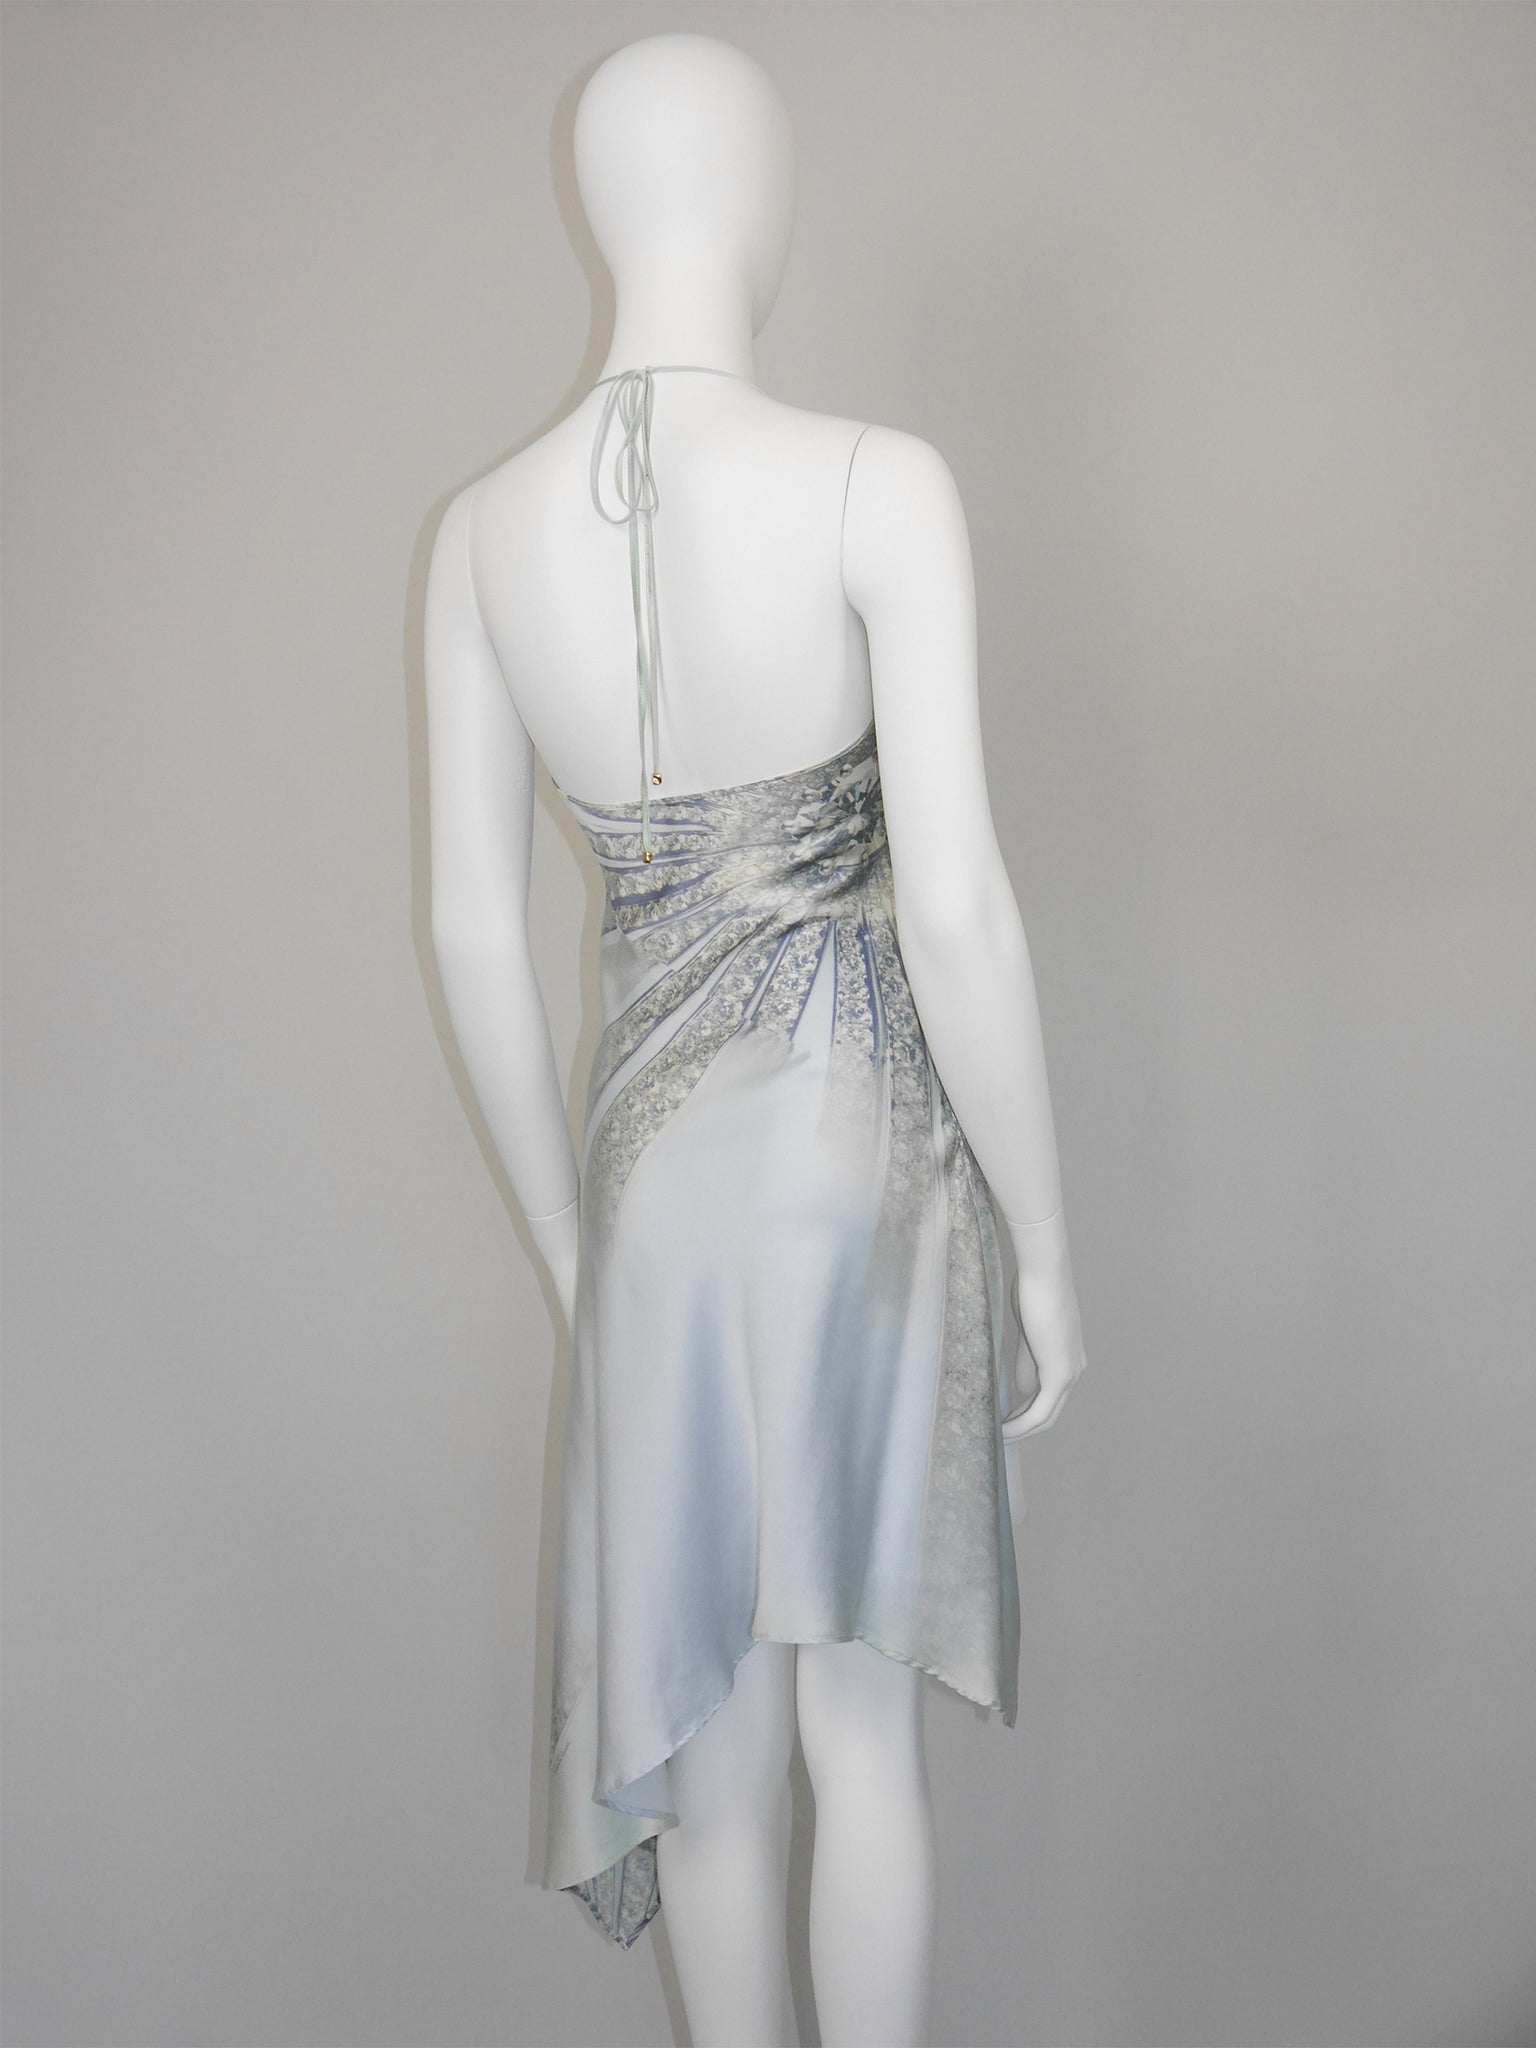 ROBERTO CAVALLI Spring 2000 Vintage Crystal Embellished Ombré Silk Slip Dress Size S